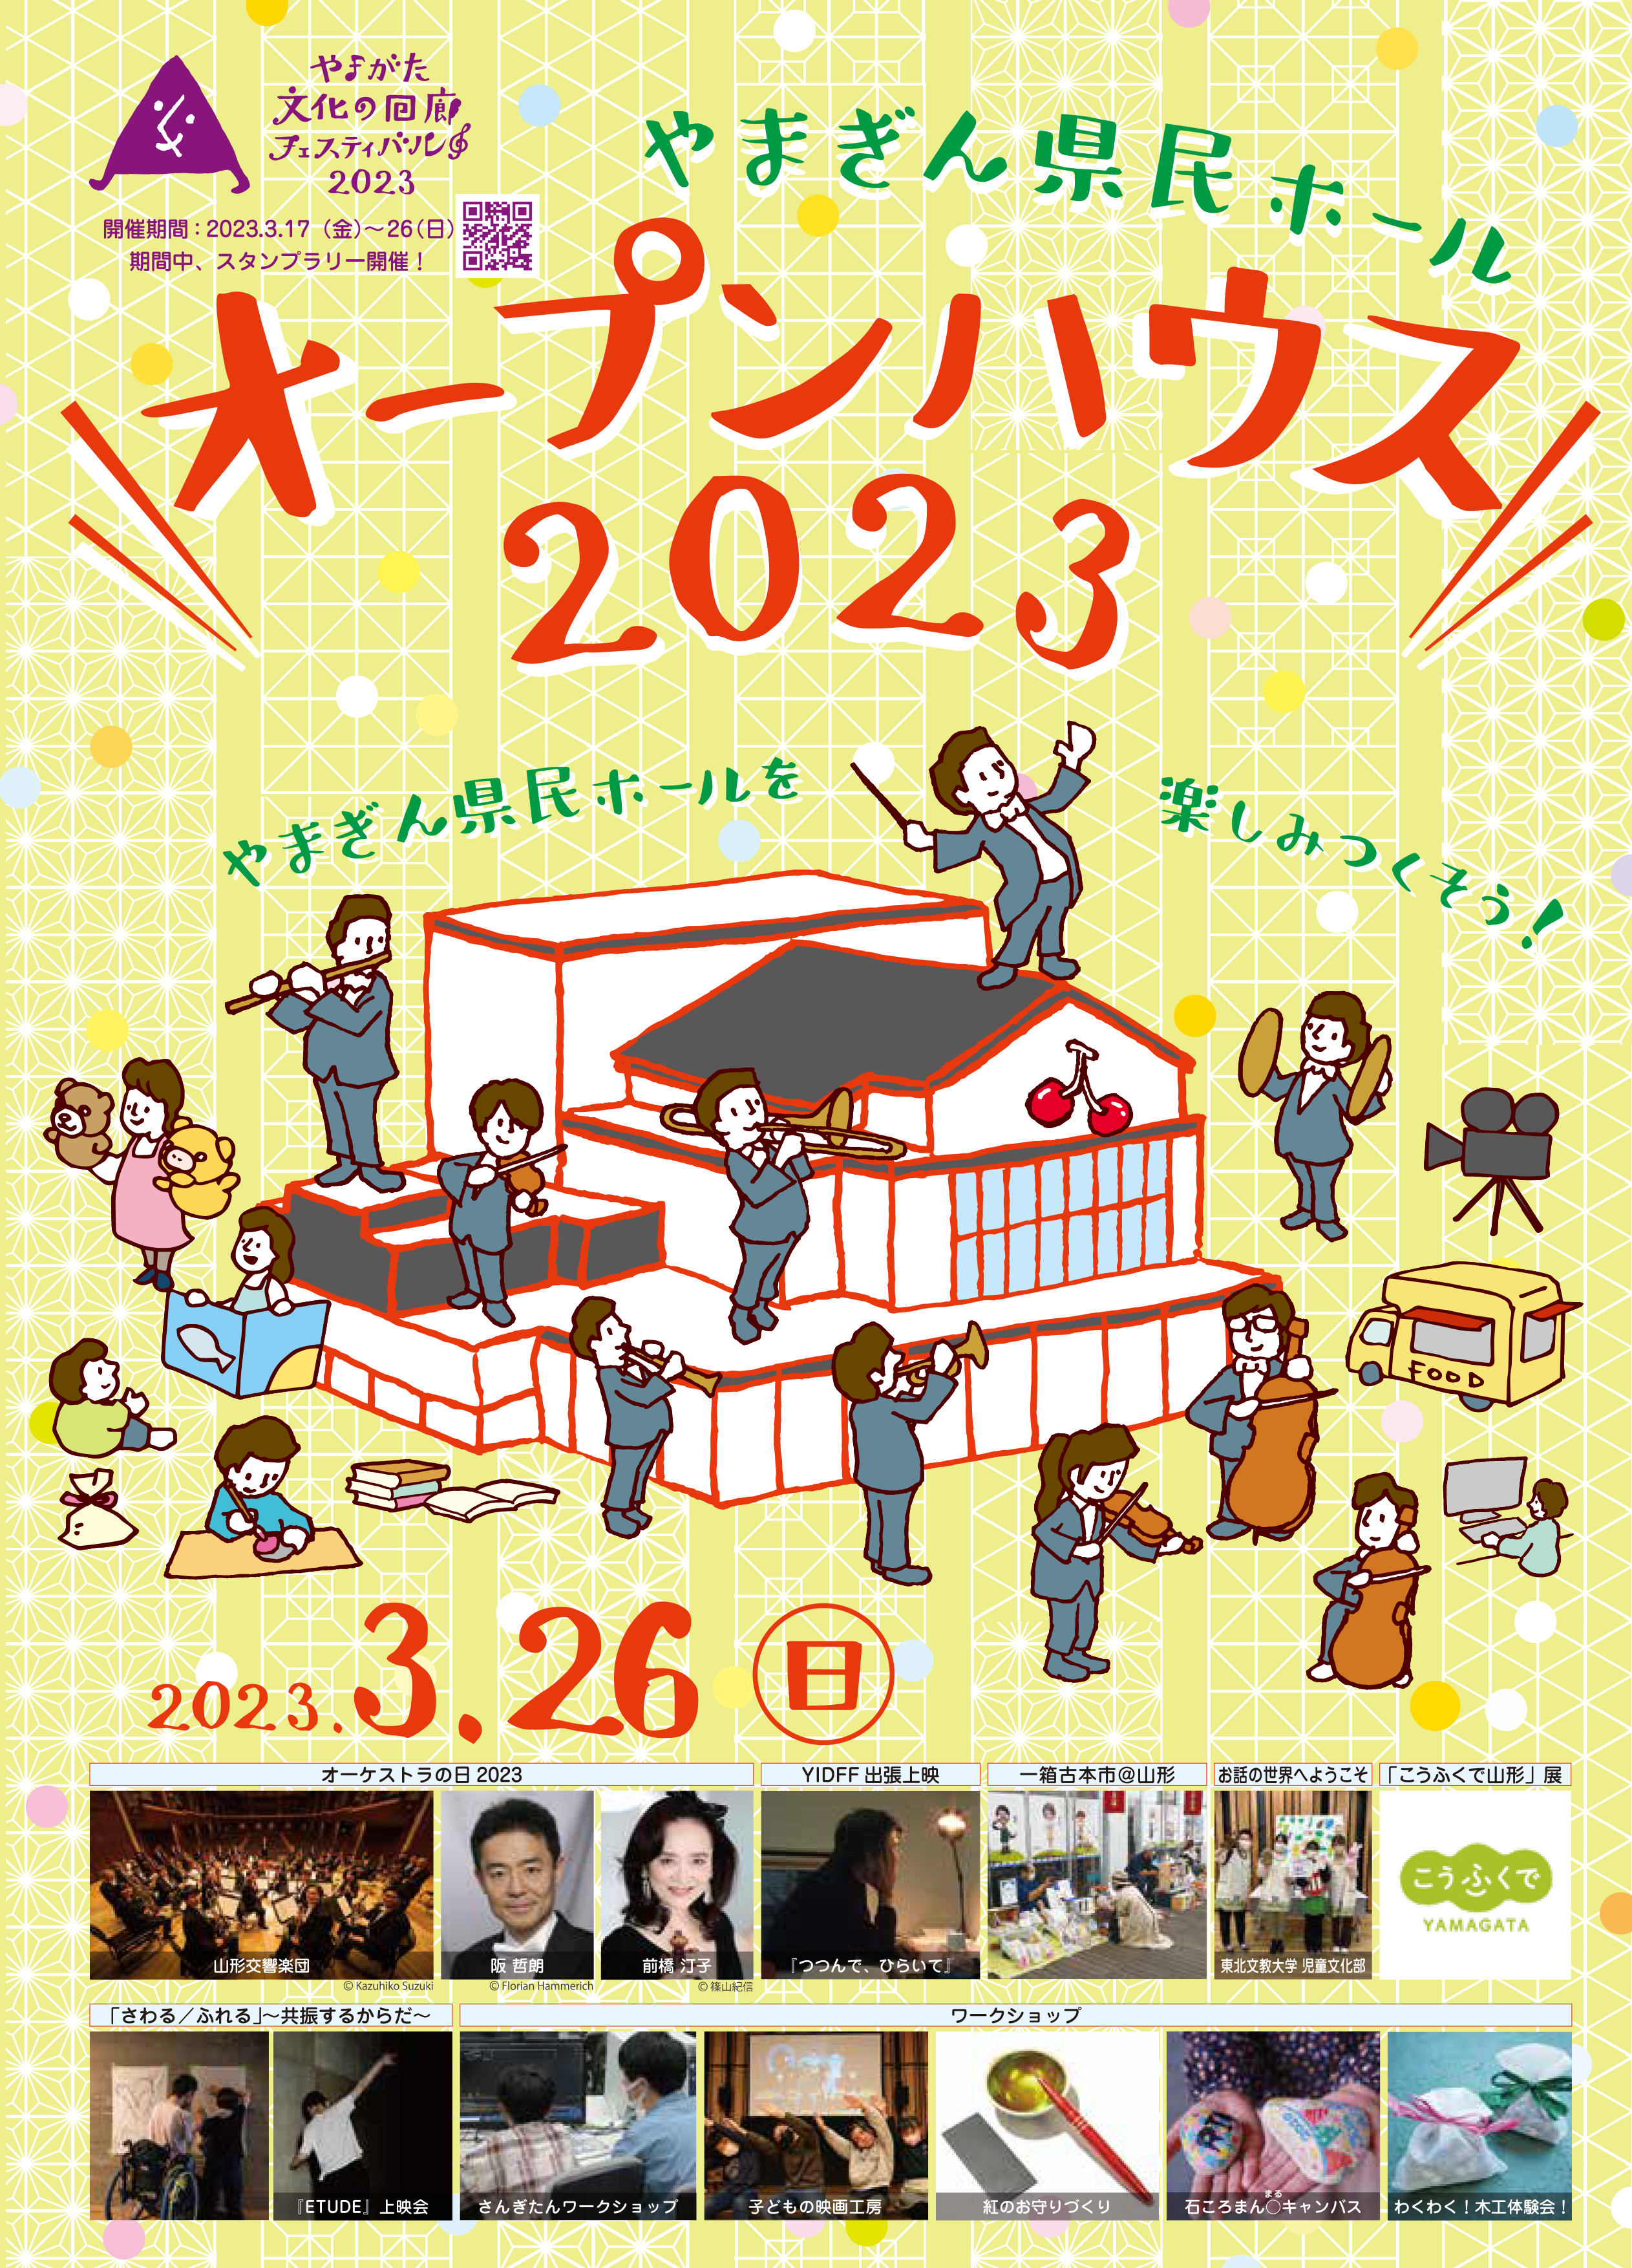 【山形イベント情報3/26】やまぎん県民ホールオープンハウス2023が開催されます。(山形市)